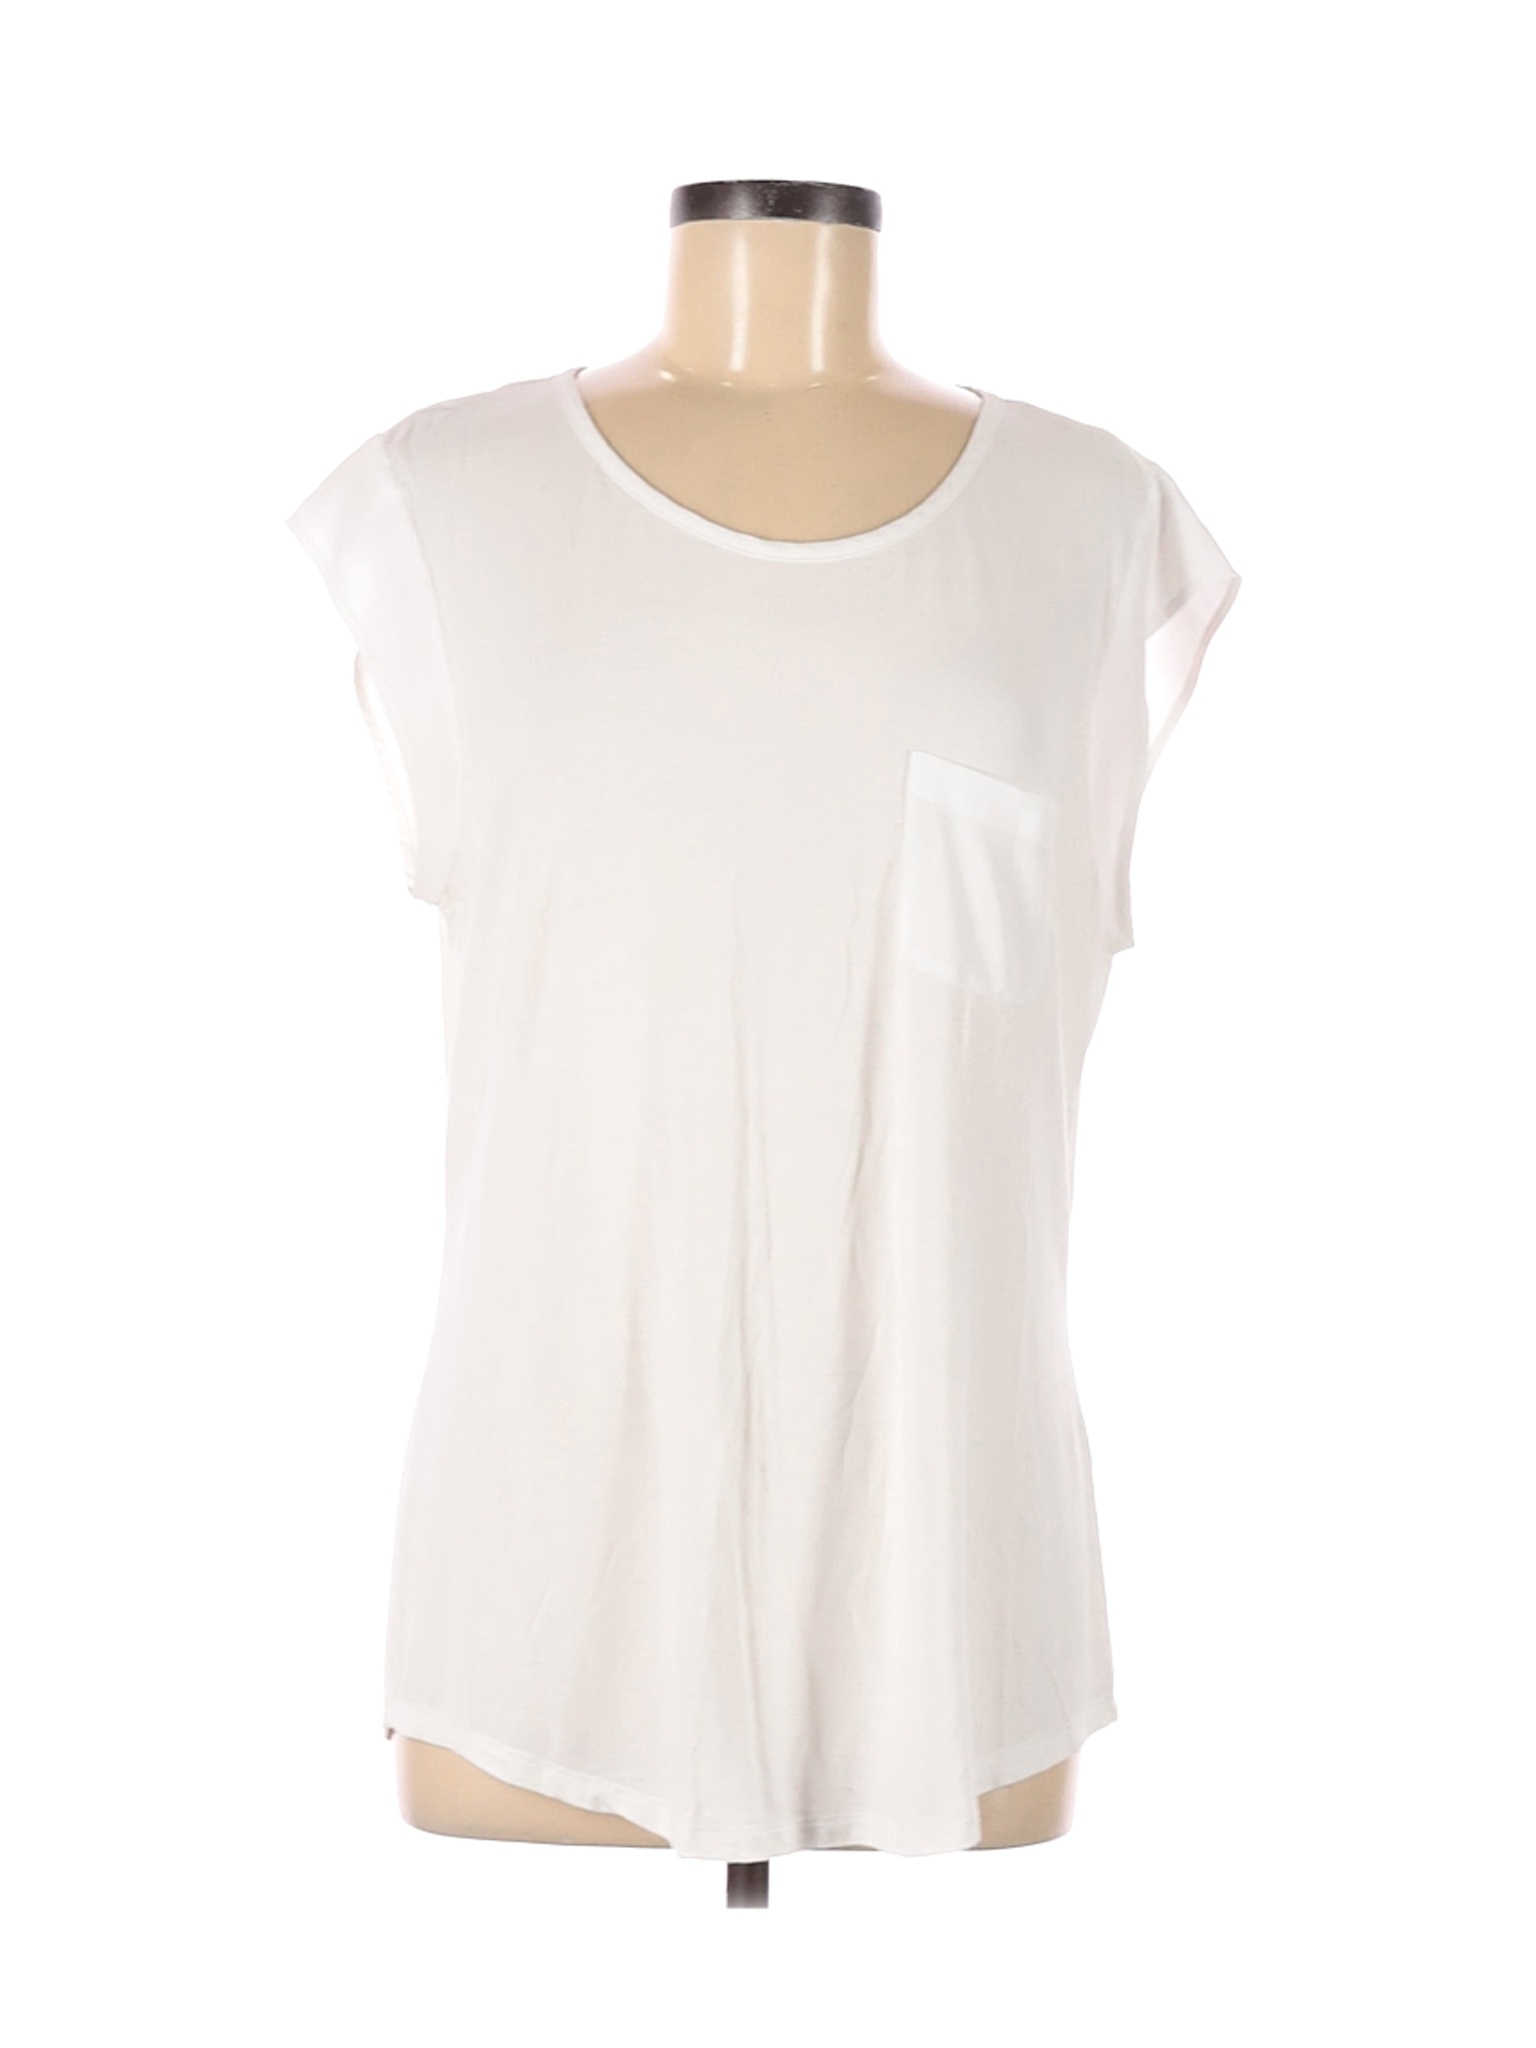 Calvin Klein Women White Short Sleeve T-Shirt L | eBay